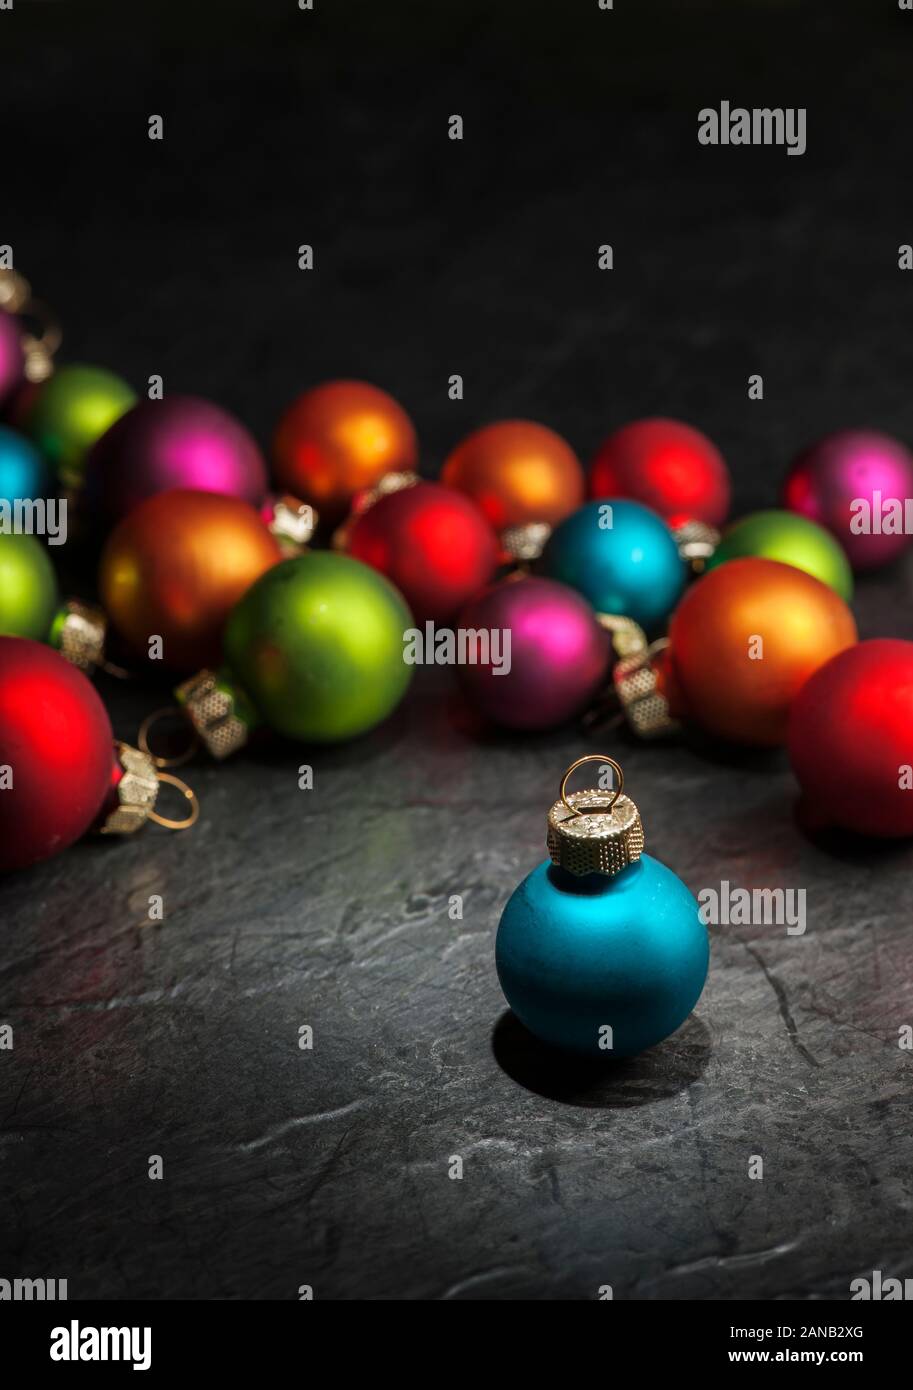 Les petites boules de Noël floue colorée sur une plaque en ardoise avec une seule boule de noël bleu permanent dans la forte avant-plan. Banque D'Images